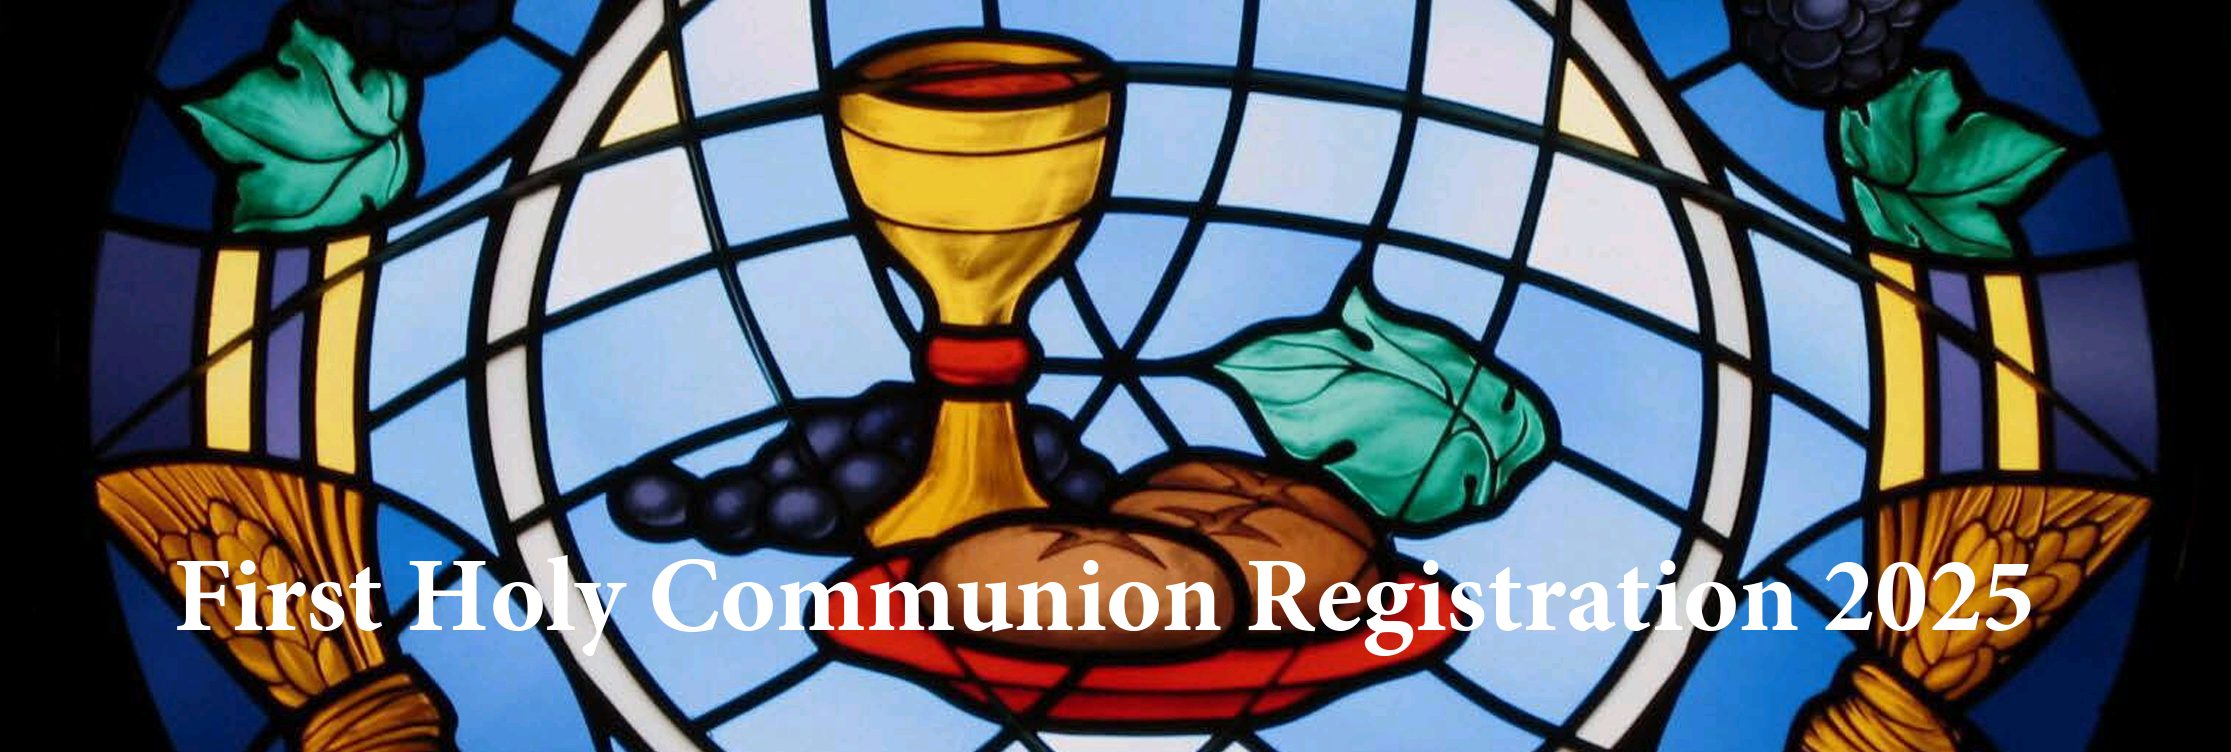 St Patrick's Communion Registration 2025